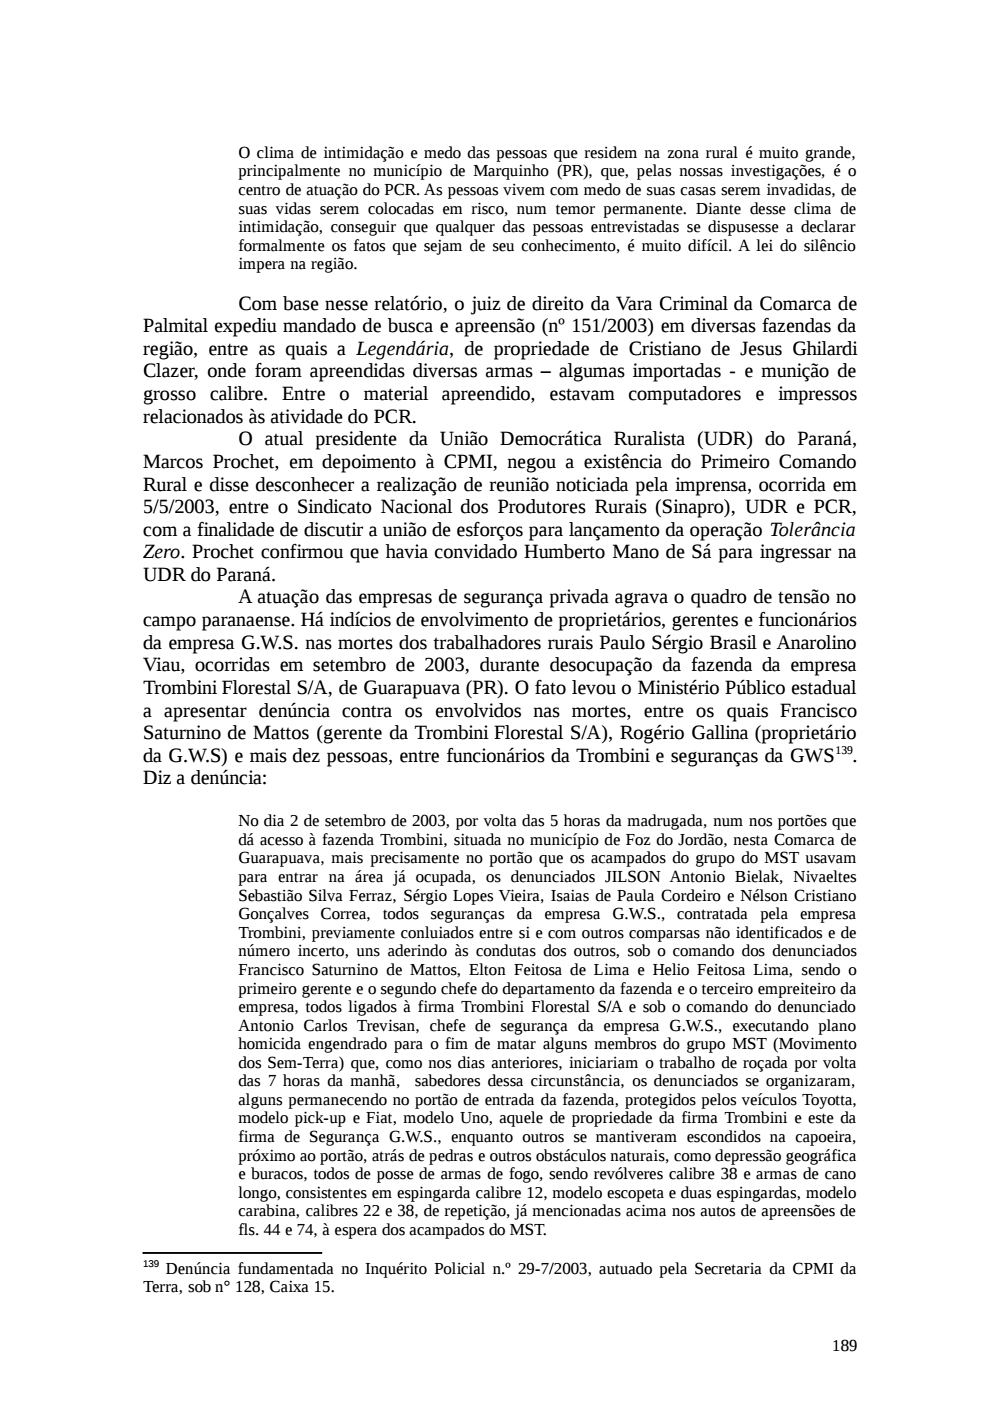 Page 189 from Relatório final da comissão